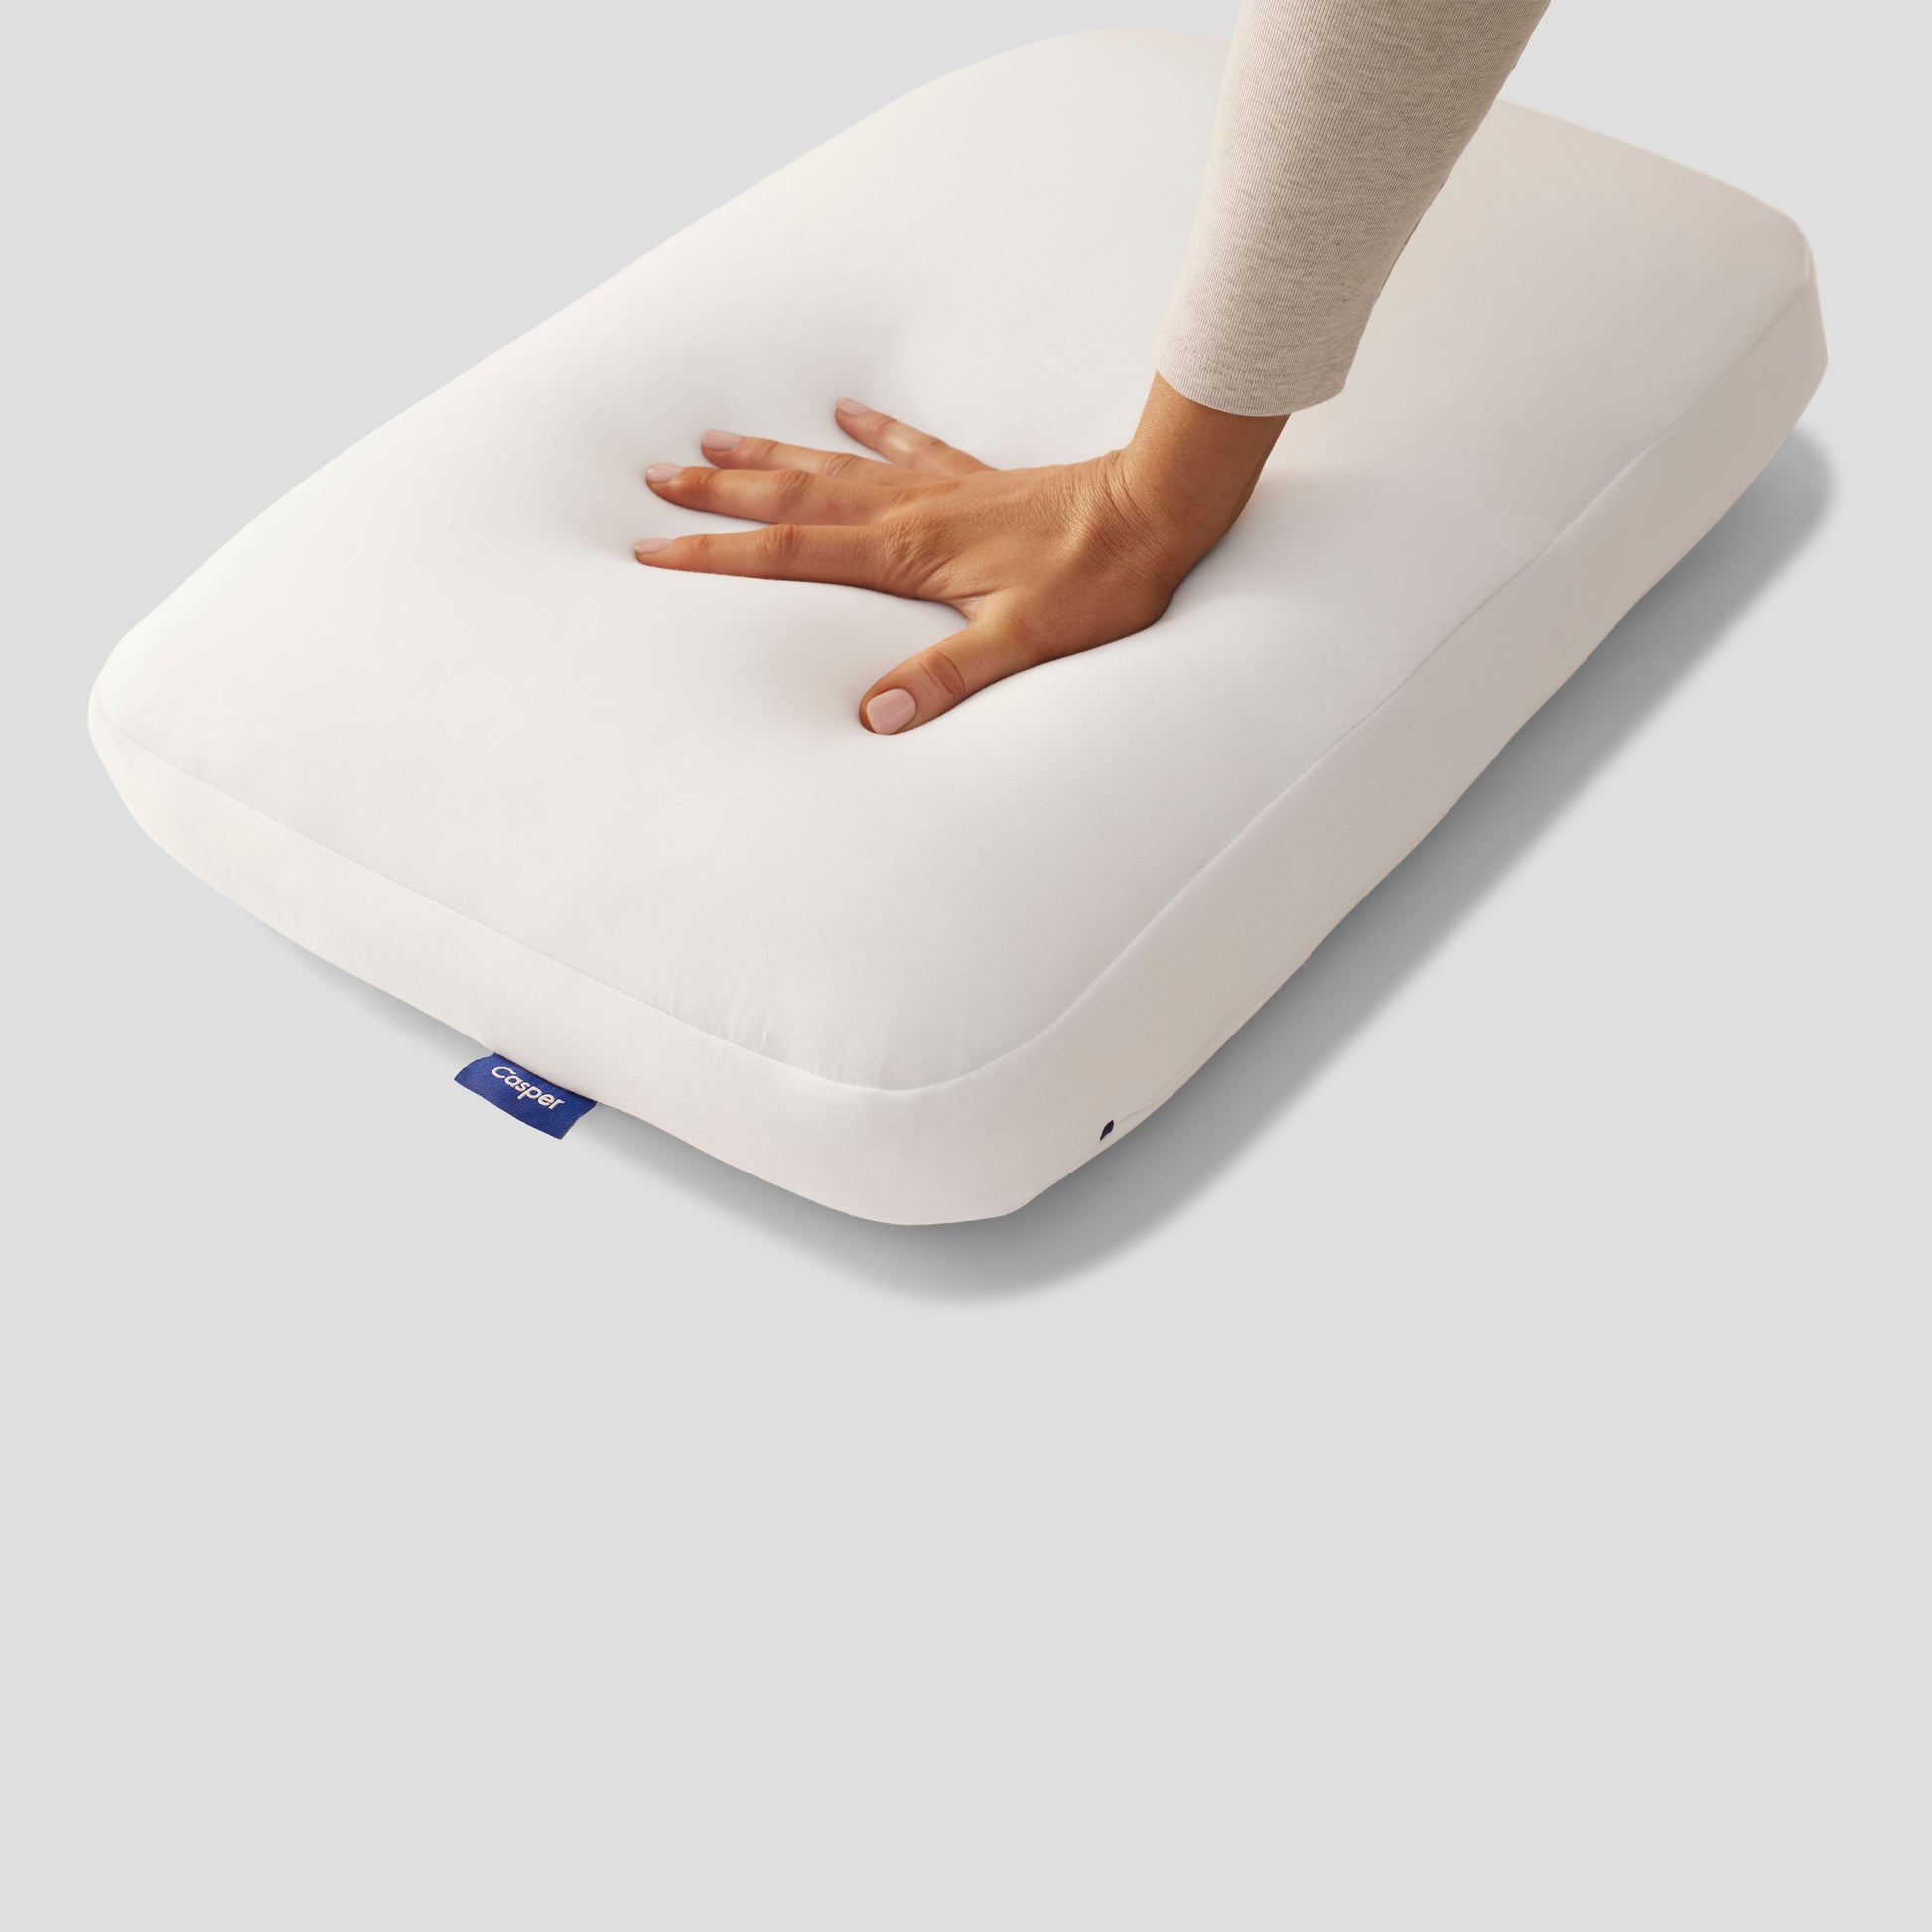 Hand Pressing On Casper Hybrid Pillow